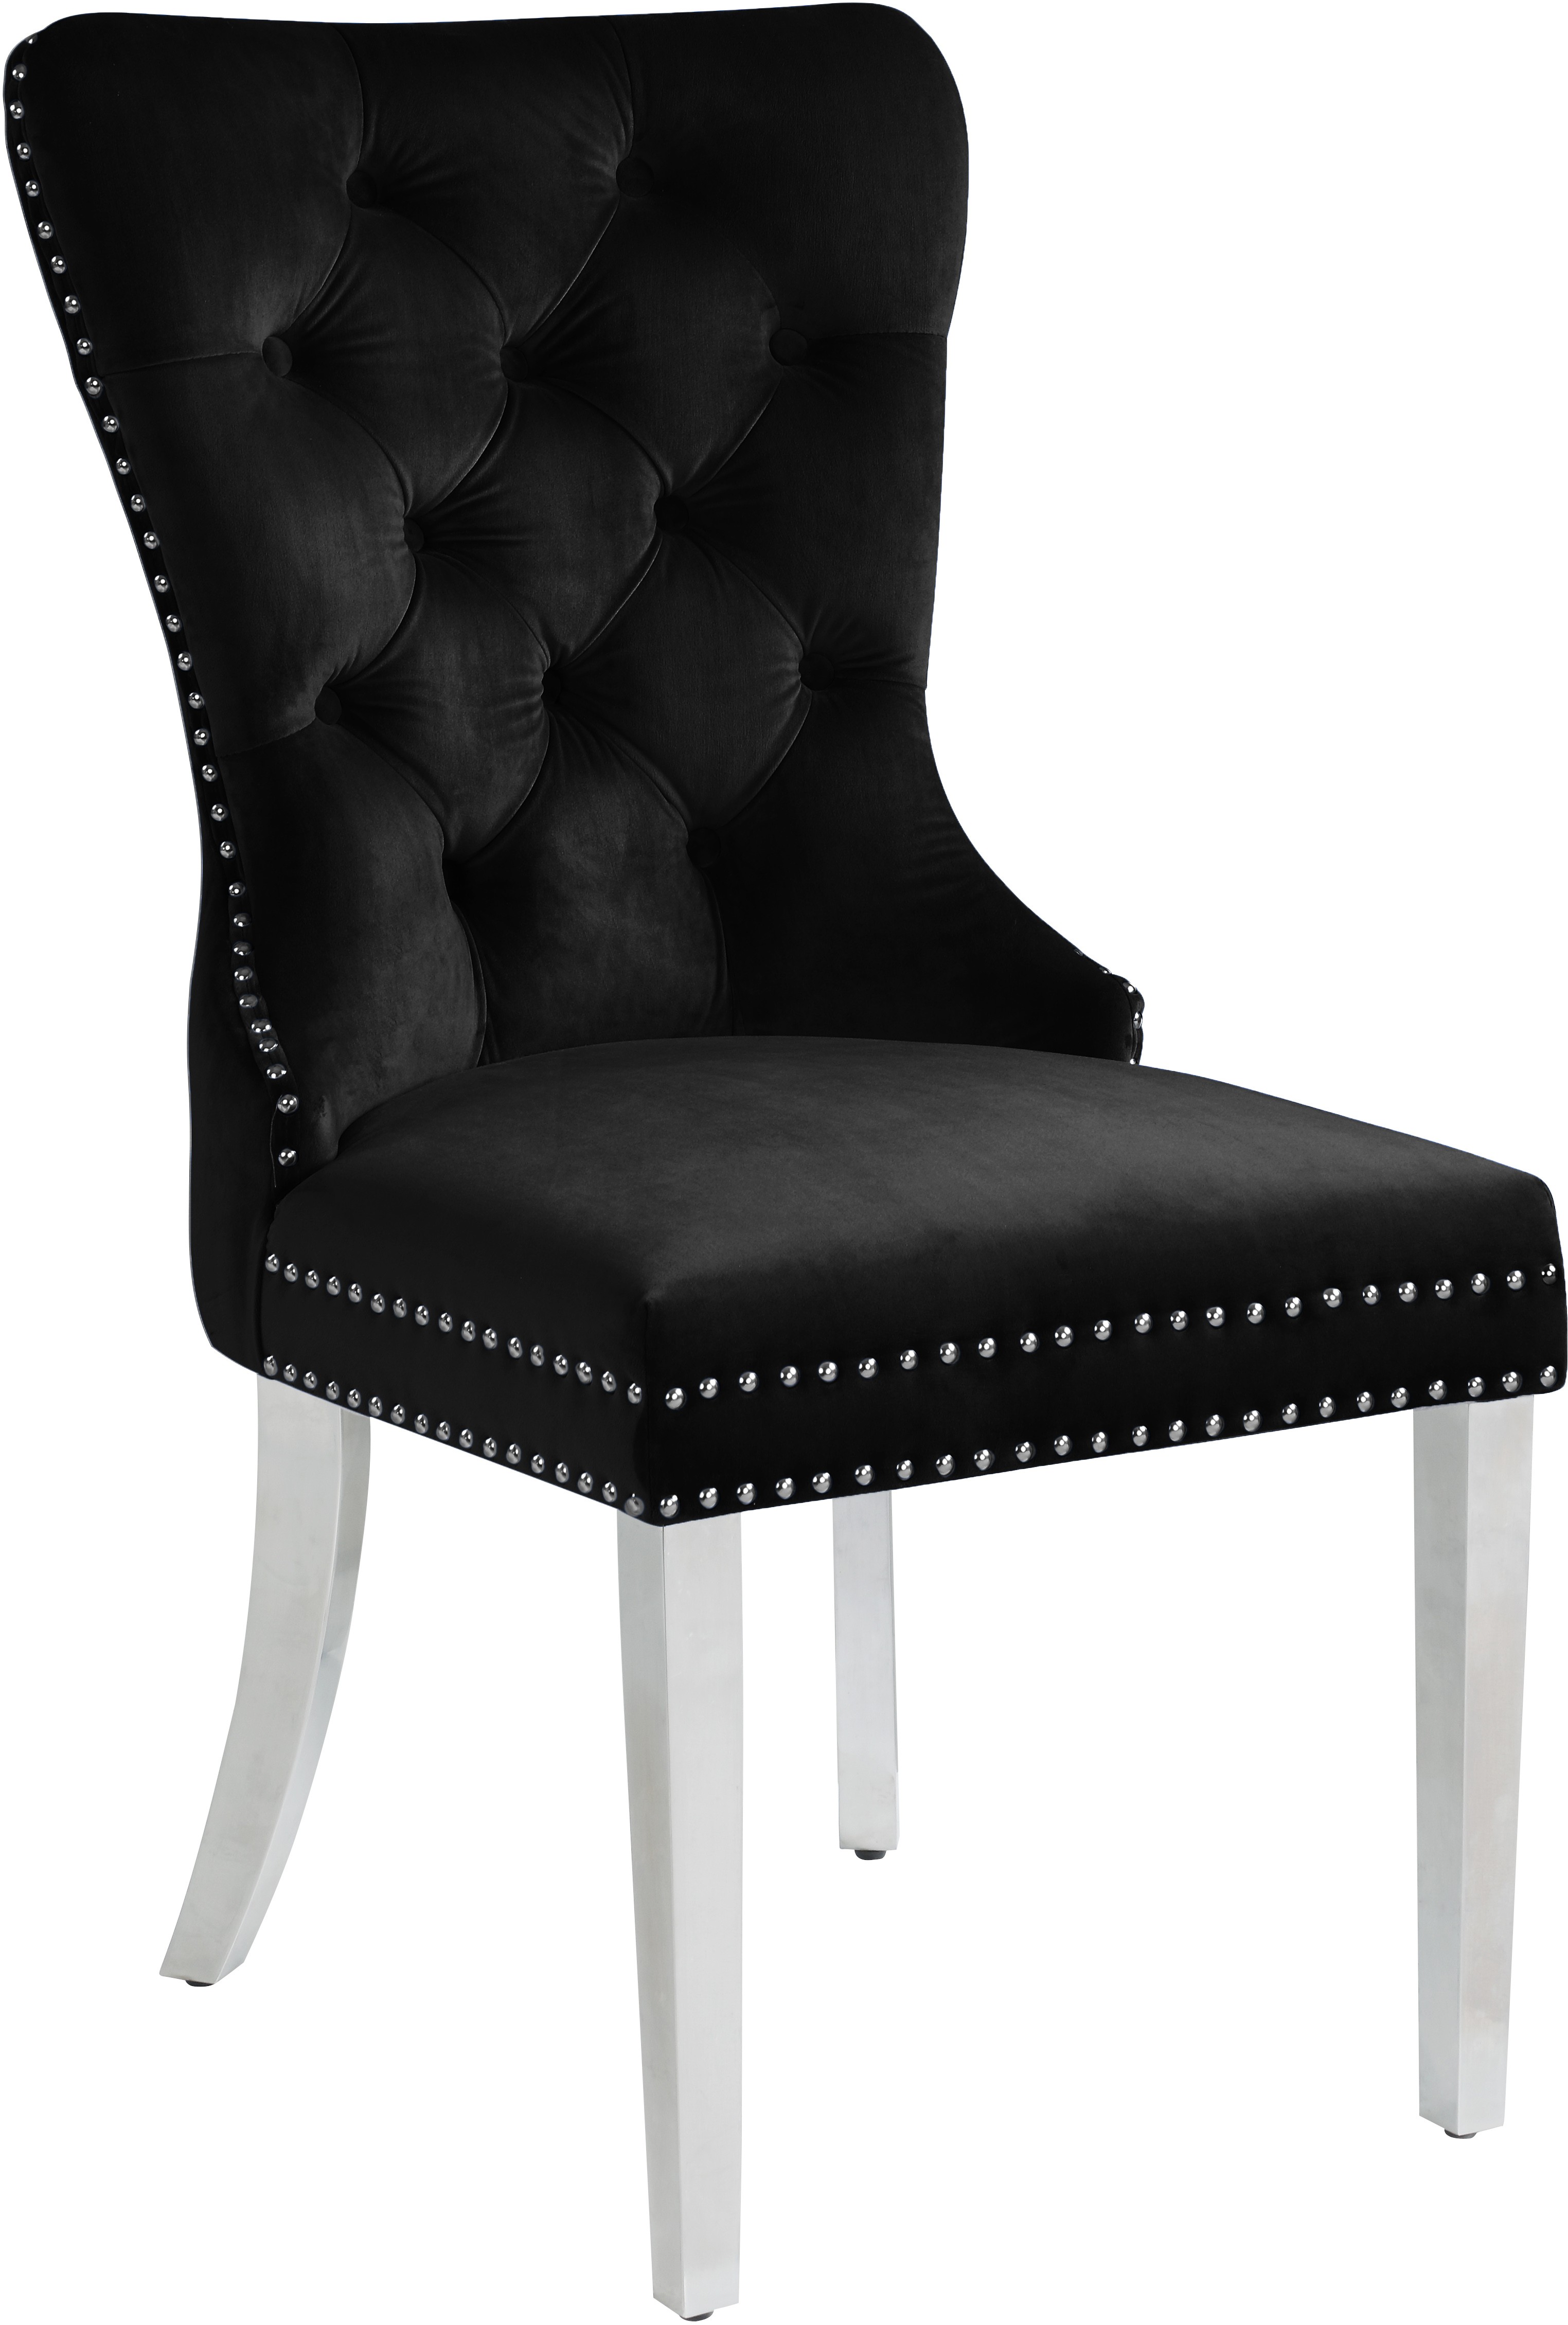 Carmen Black Velvet Dining Chair (Set of 2) 743Black-C - 1StopBedrooms.